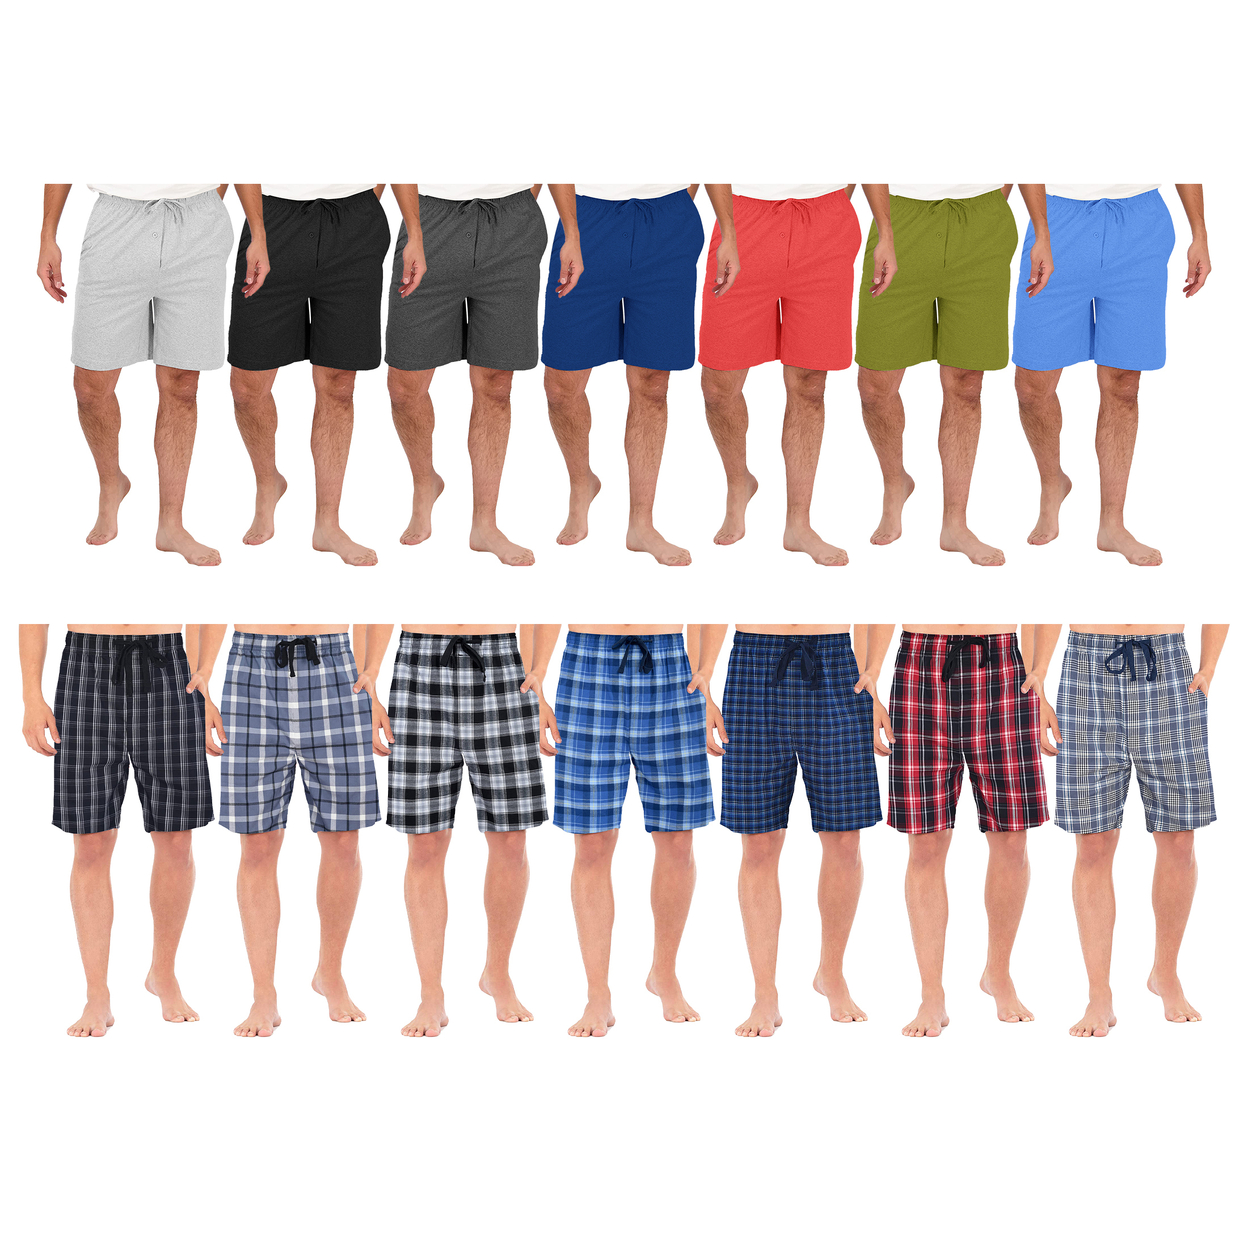 3-Pack: Men's Ultra Soft Knit Lounge Pajama Sleep Shorts - Plaid, Large